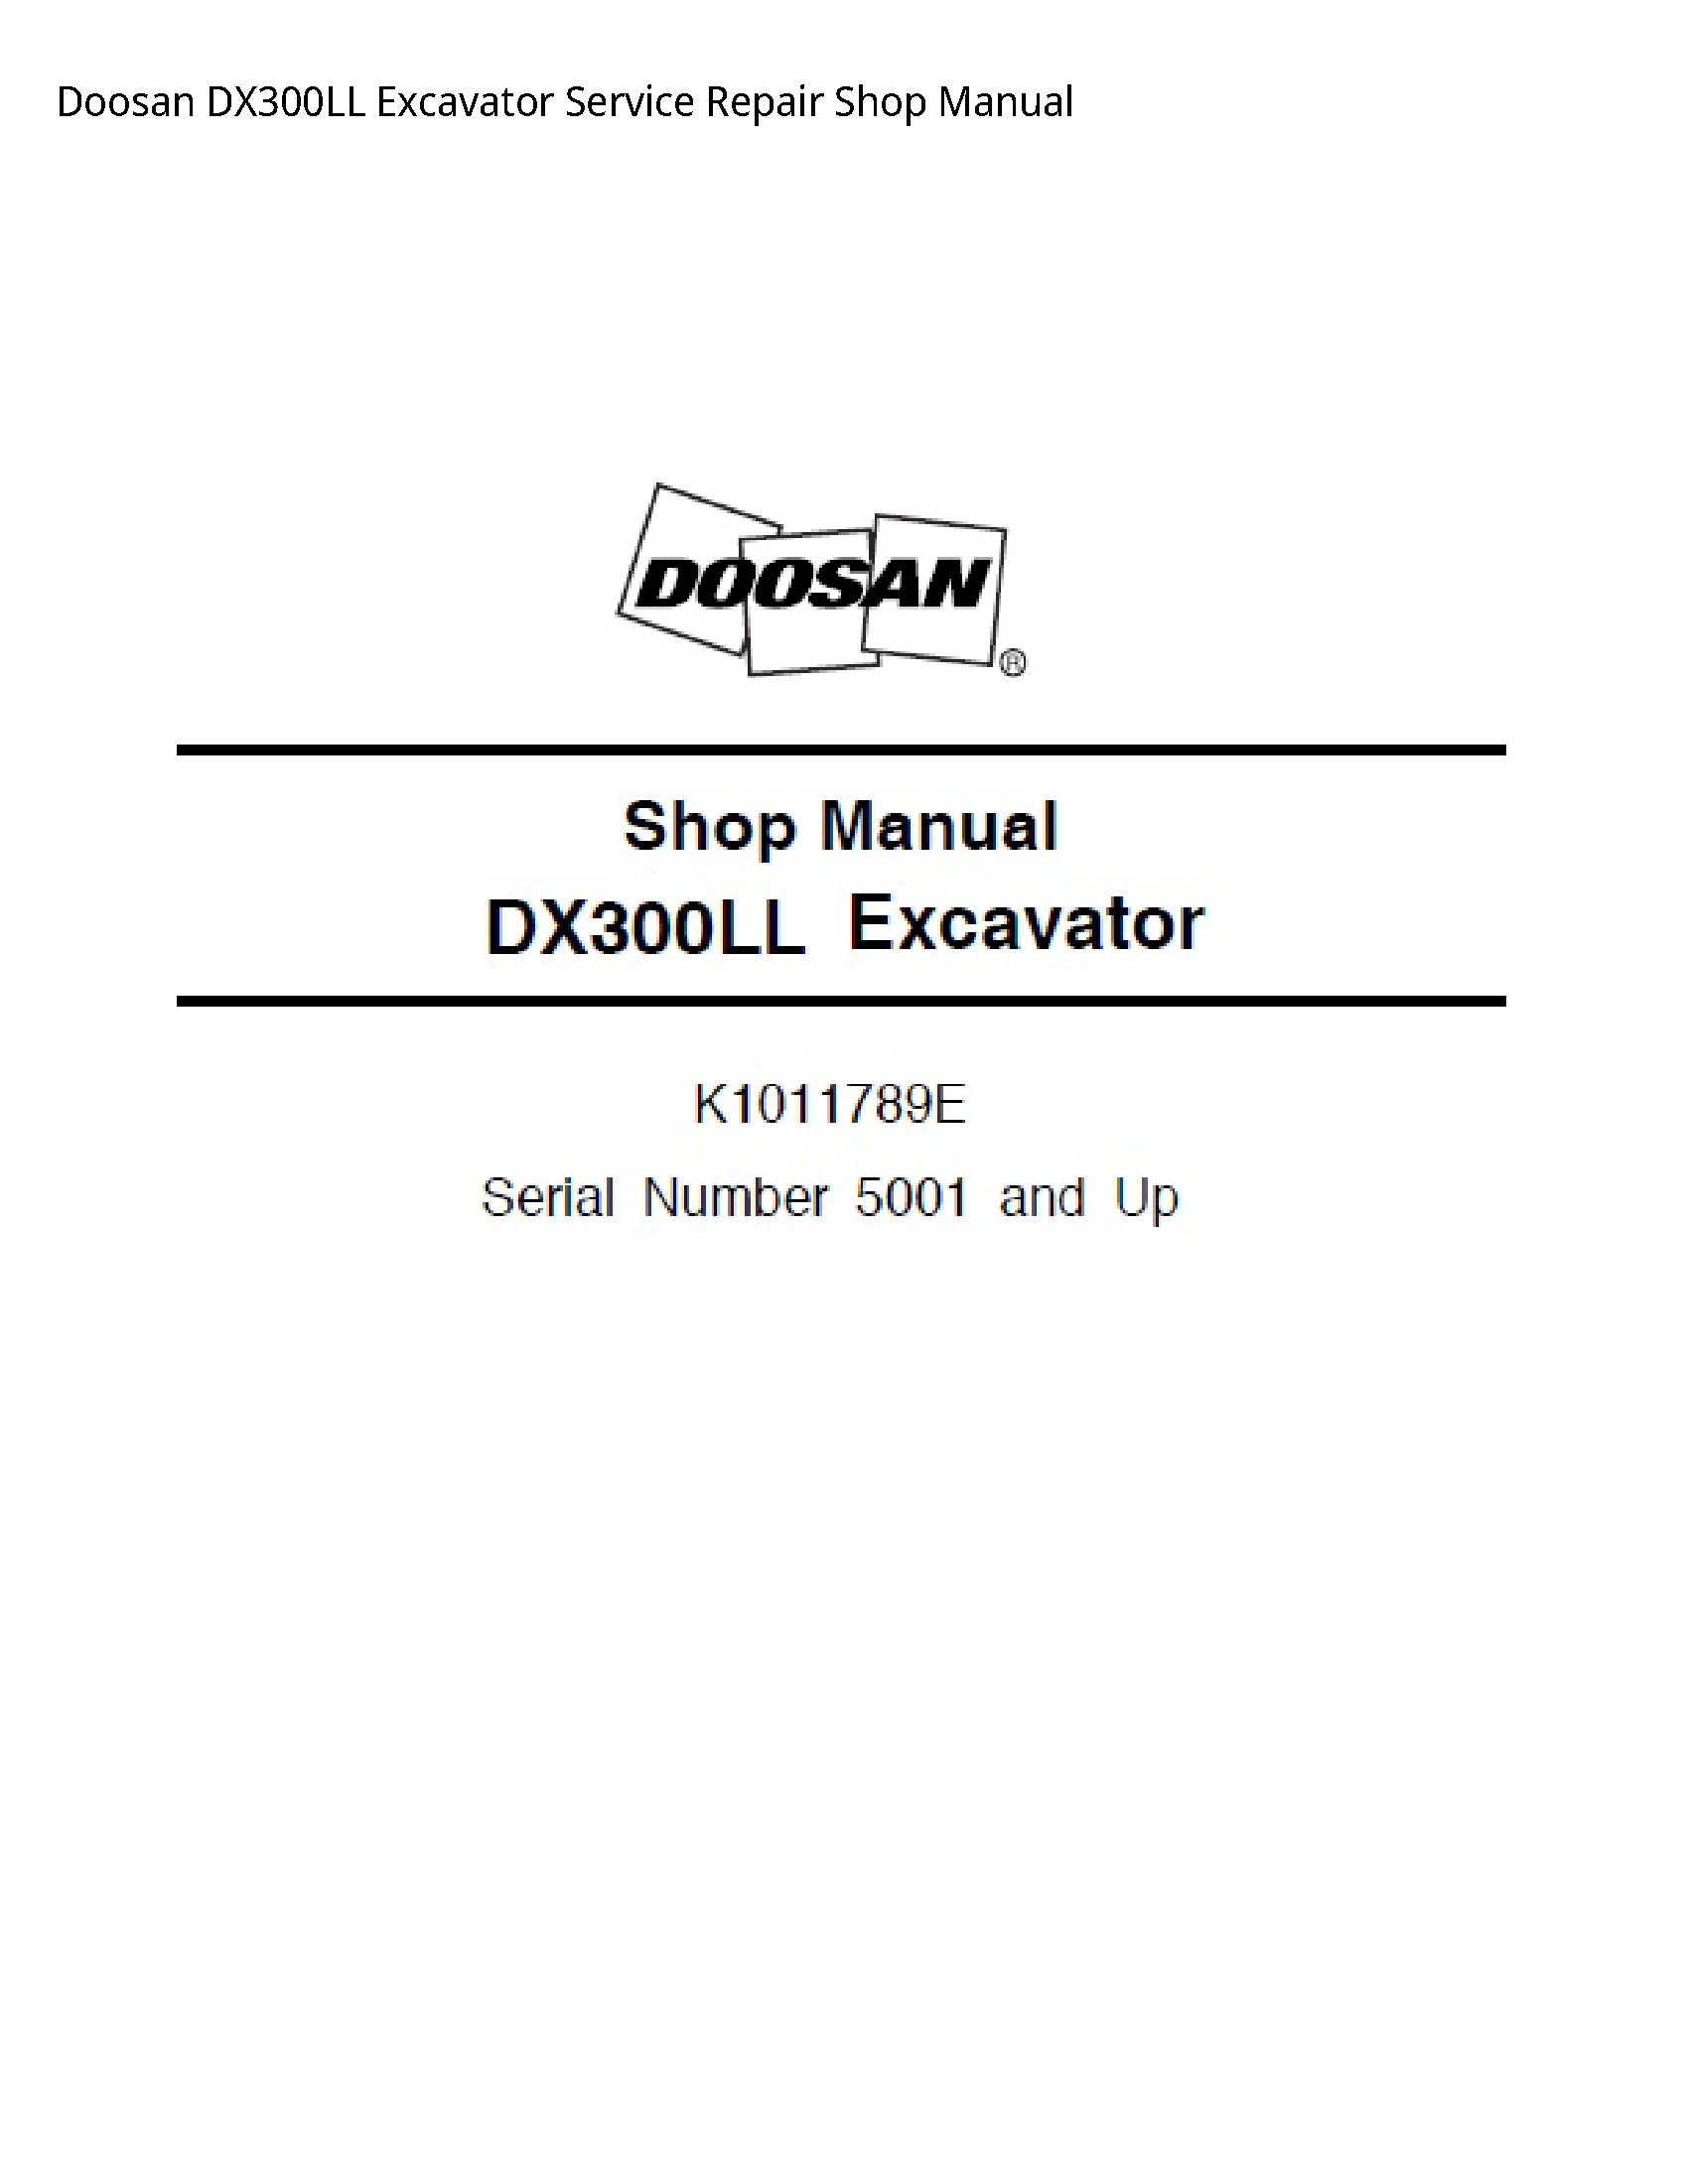 Doosan DX300LL Excavator manual